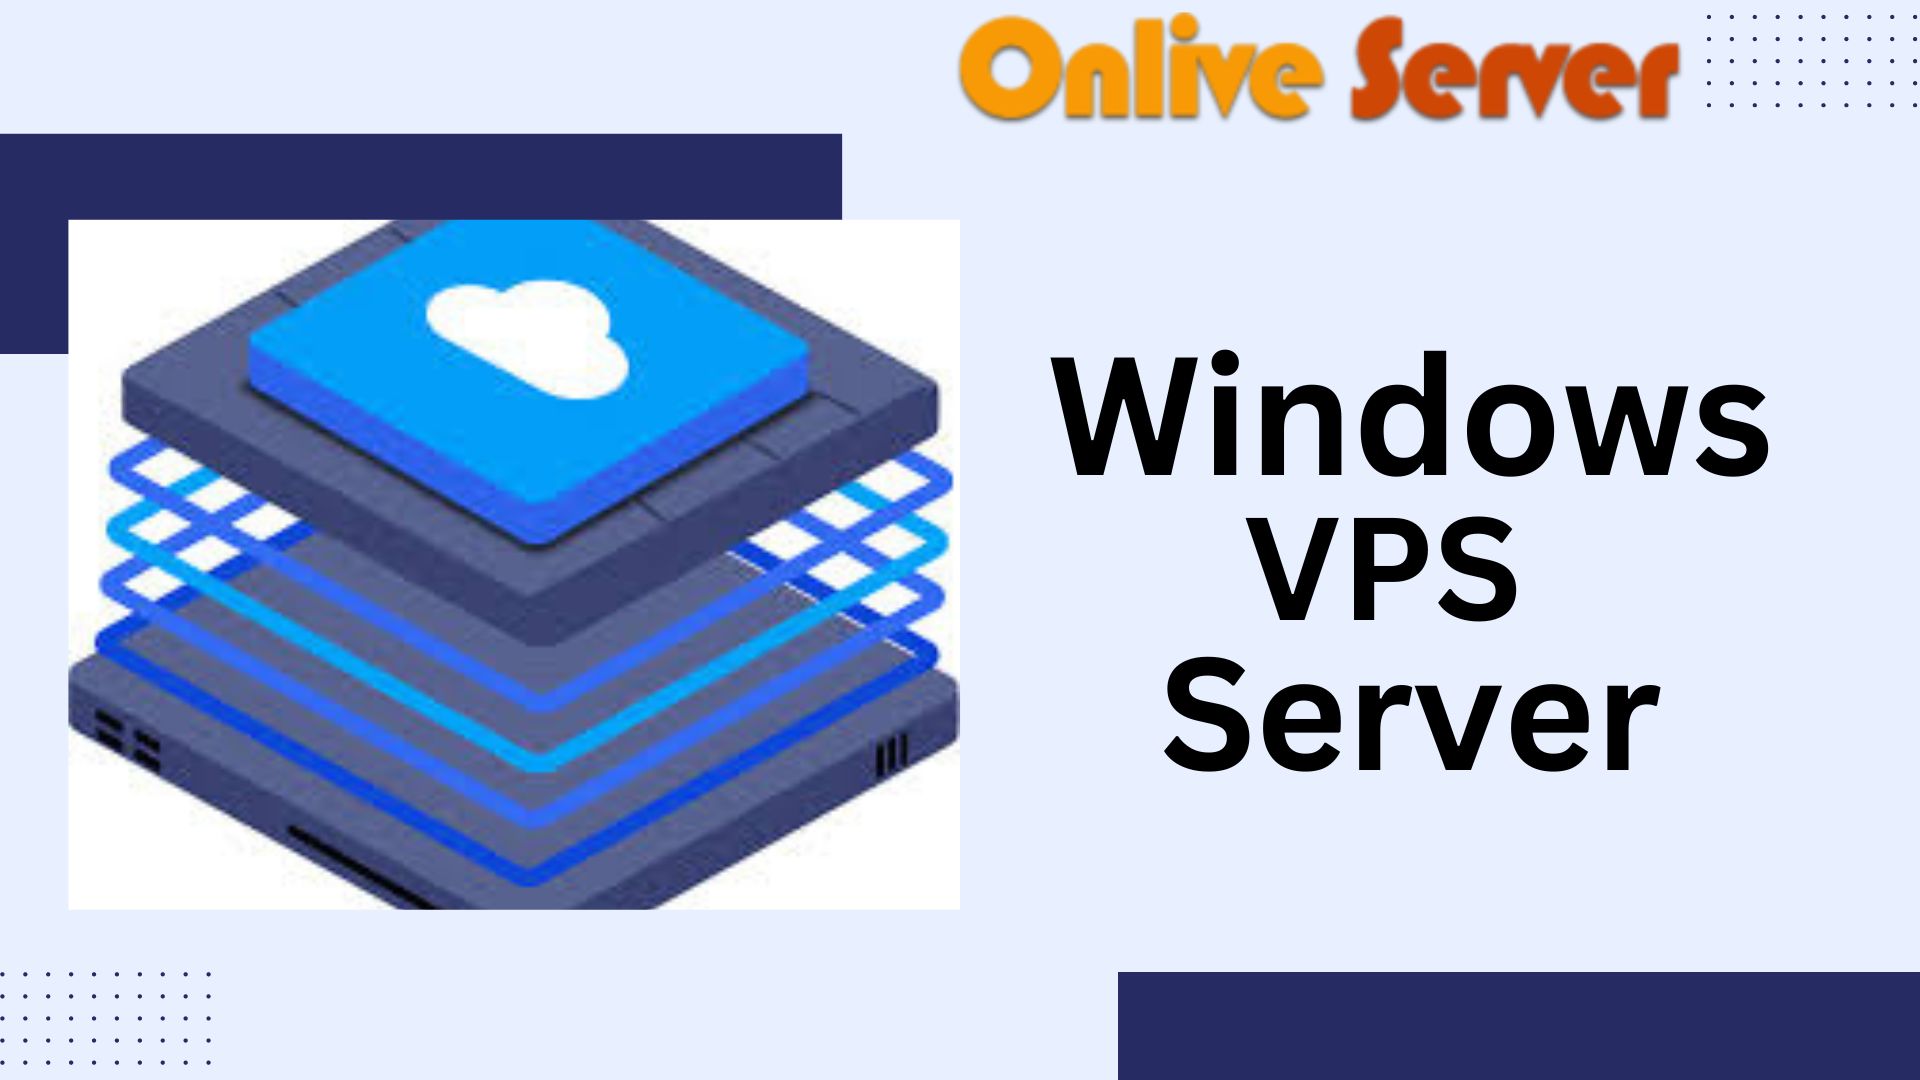 Windows VPS Server